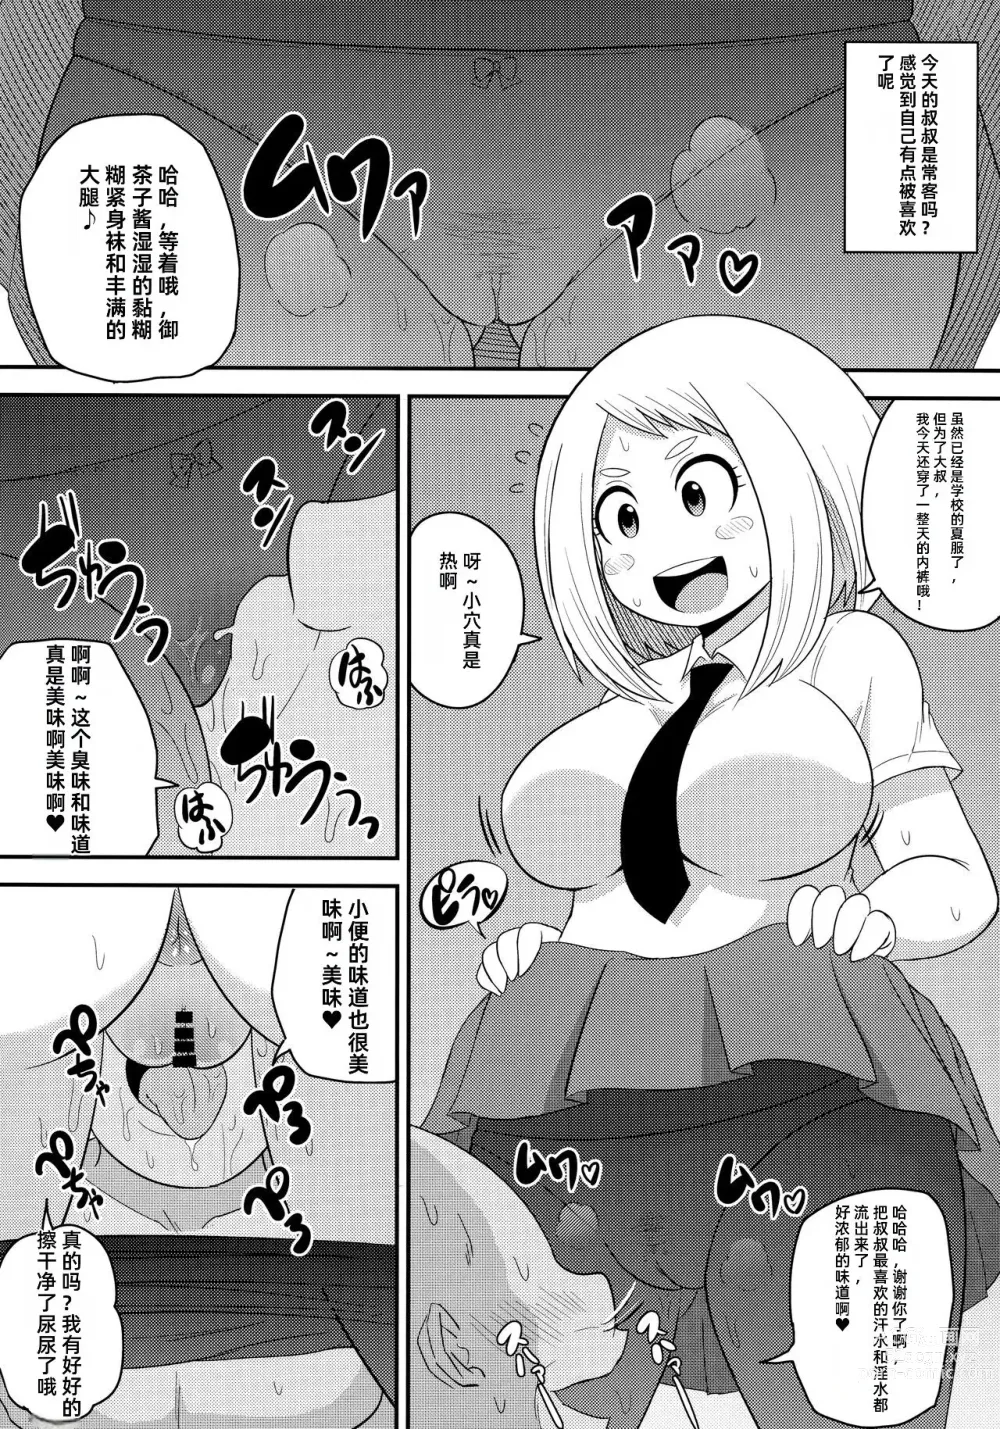 Page 7 of doujinshi Ochako Bitch Academia